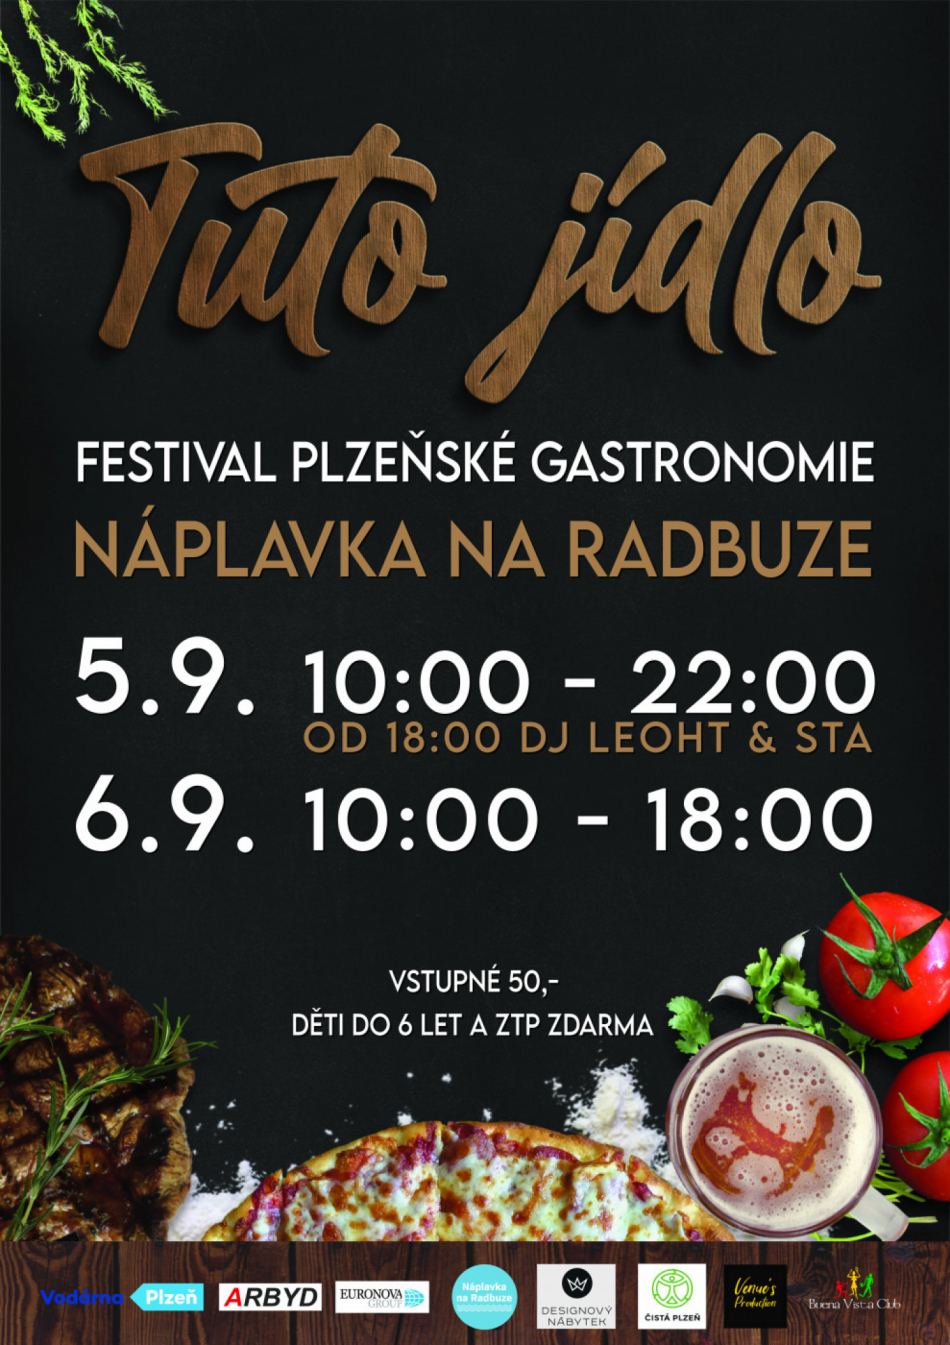 Food festival TUTO jídlo provoní již tento víkend plzeňskou Náplavku na Radbuze